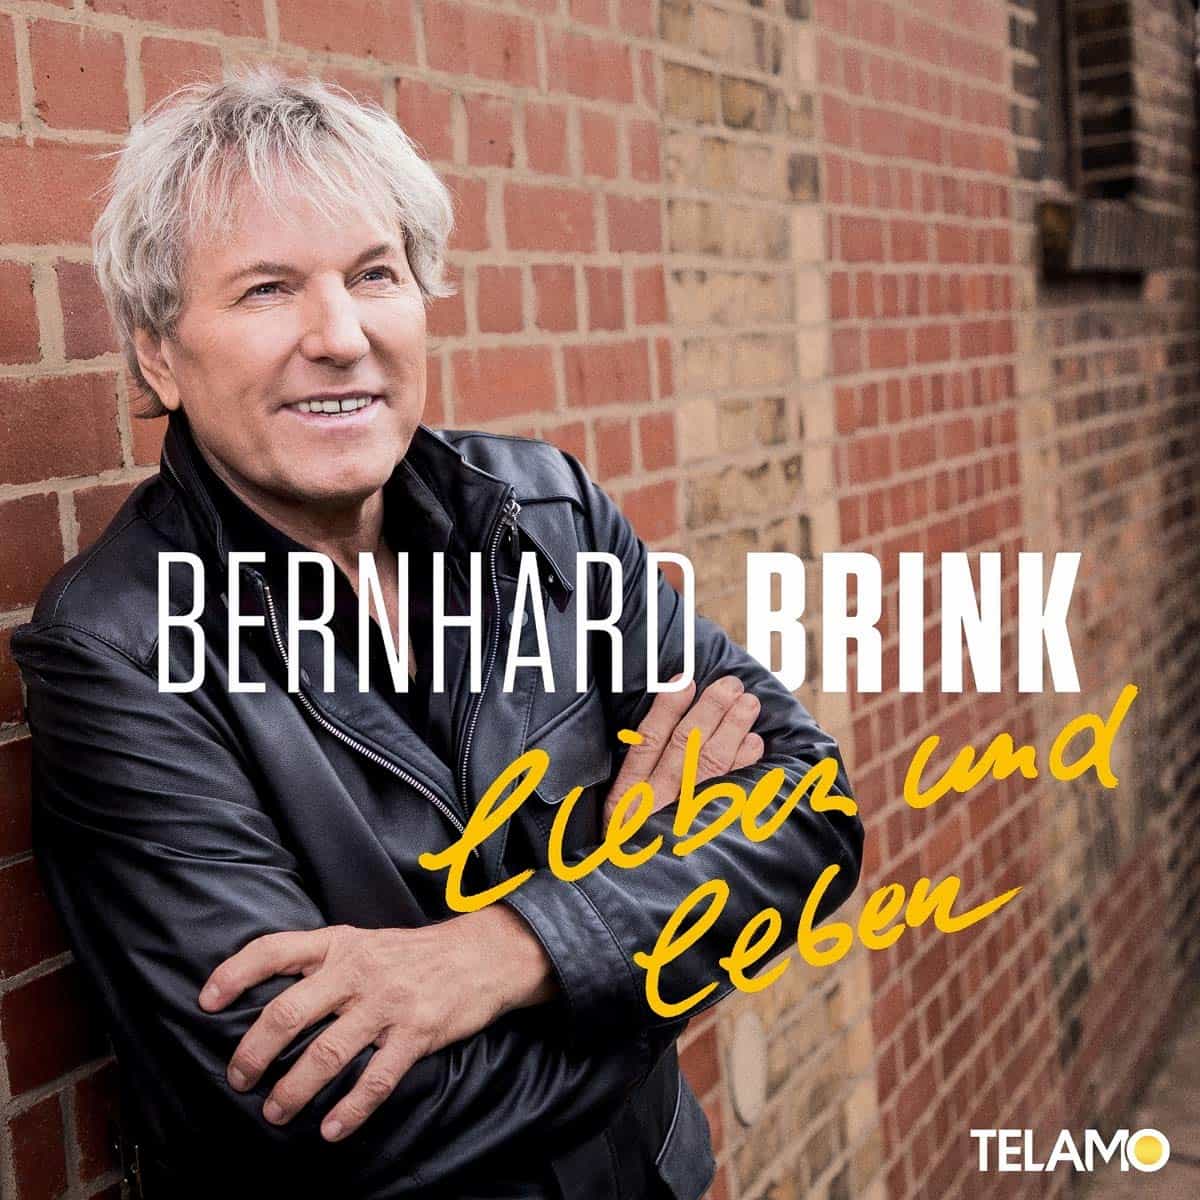 Bernhard Brink Neue Schlager-CD "Lieben und leben" 2021